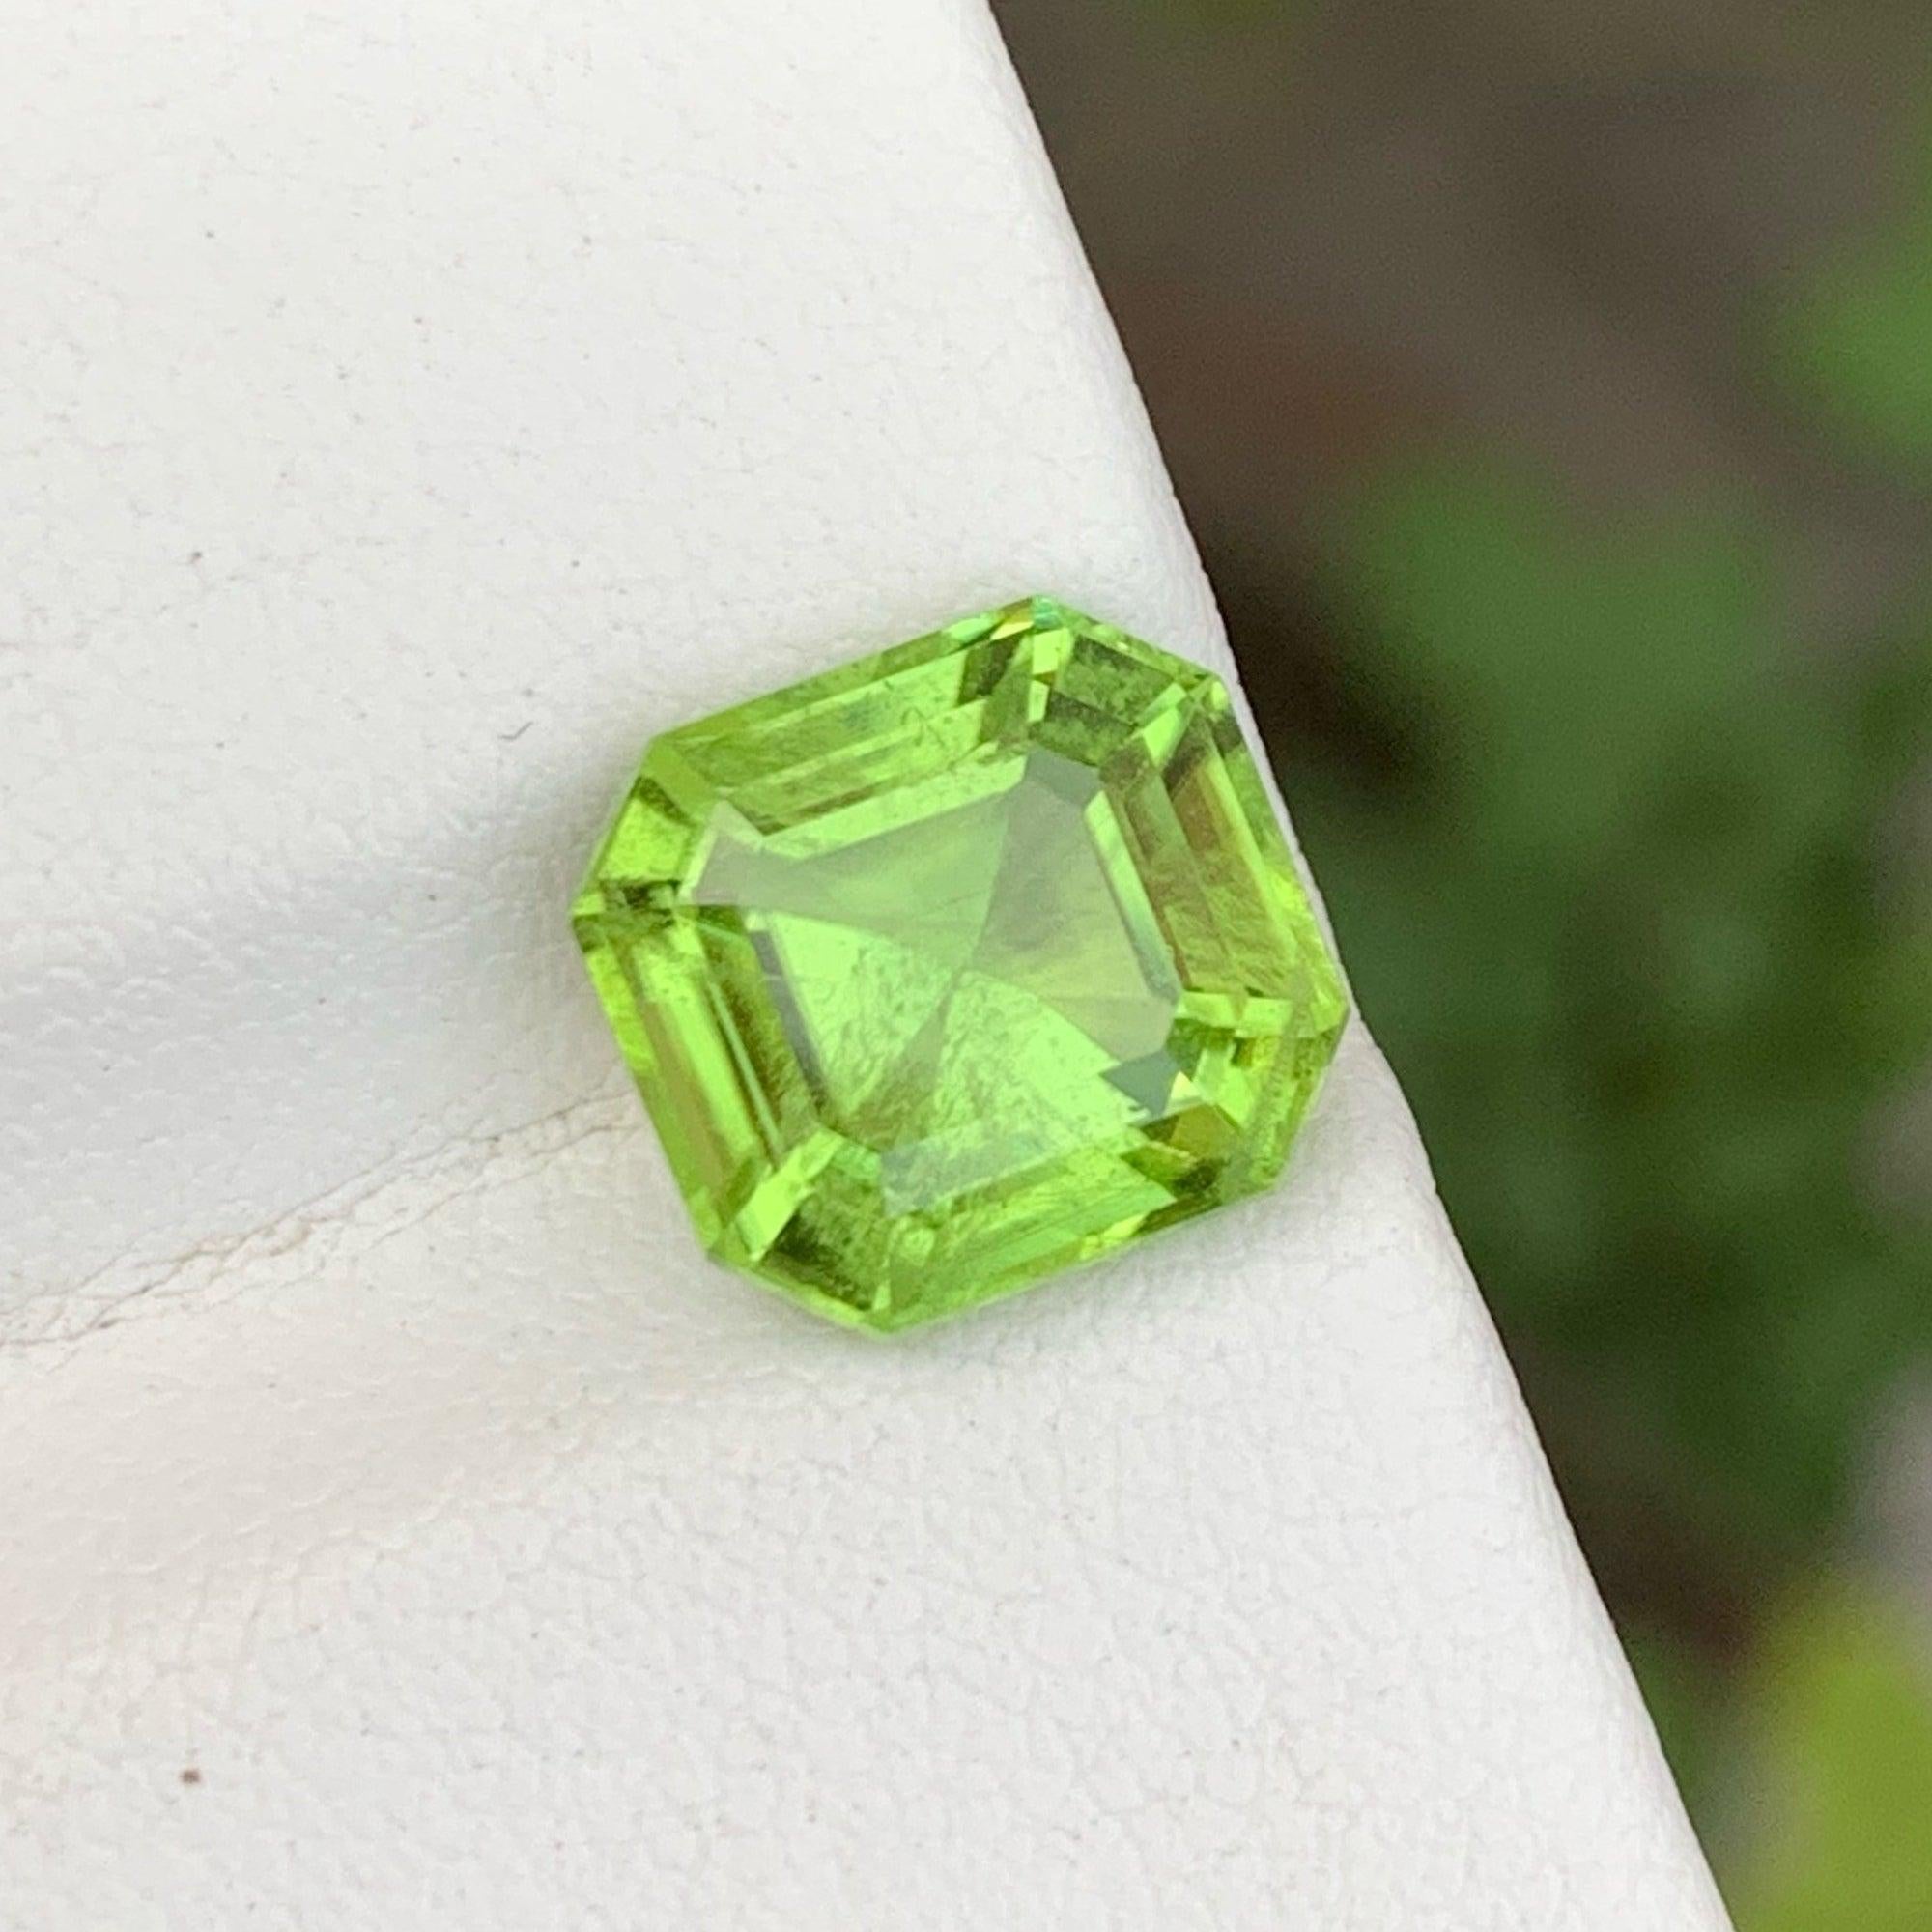 Fabuleux péridot en vrac vert pomme de  4.05 carats du Pakistan a une coupe merveilleuse dans une forme octogonale coussin, couleur verte incroyable. Une grande brillance. Cette pierre précieuse est de pureté SI.

Informations sur le produit :
TYPE